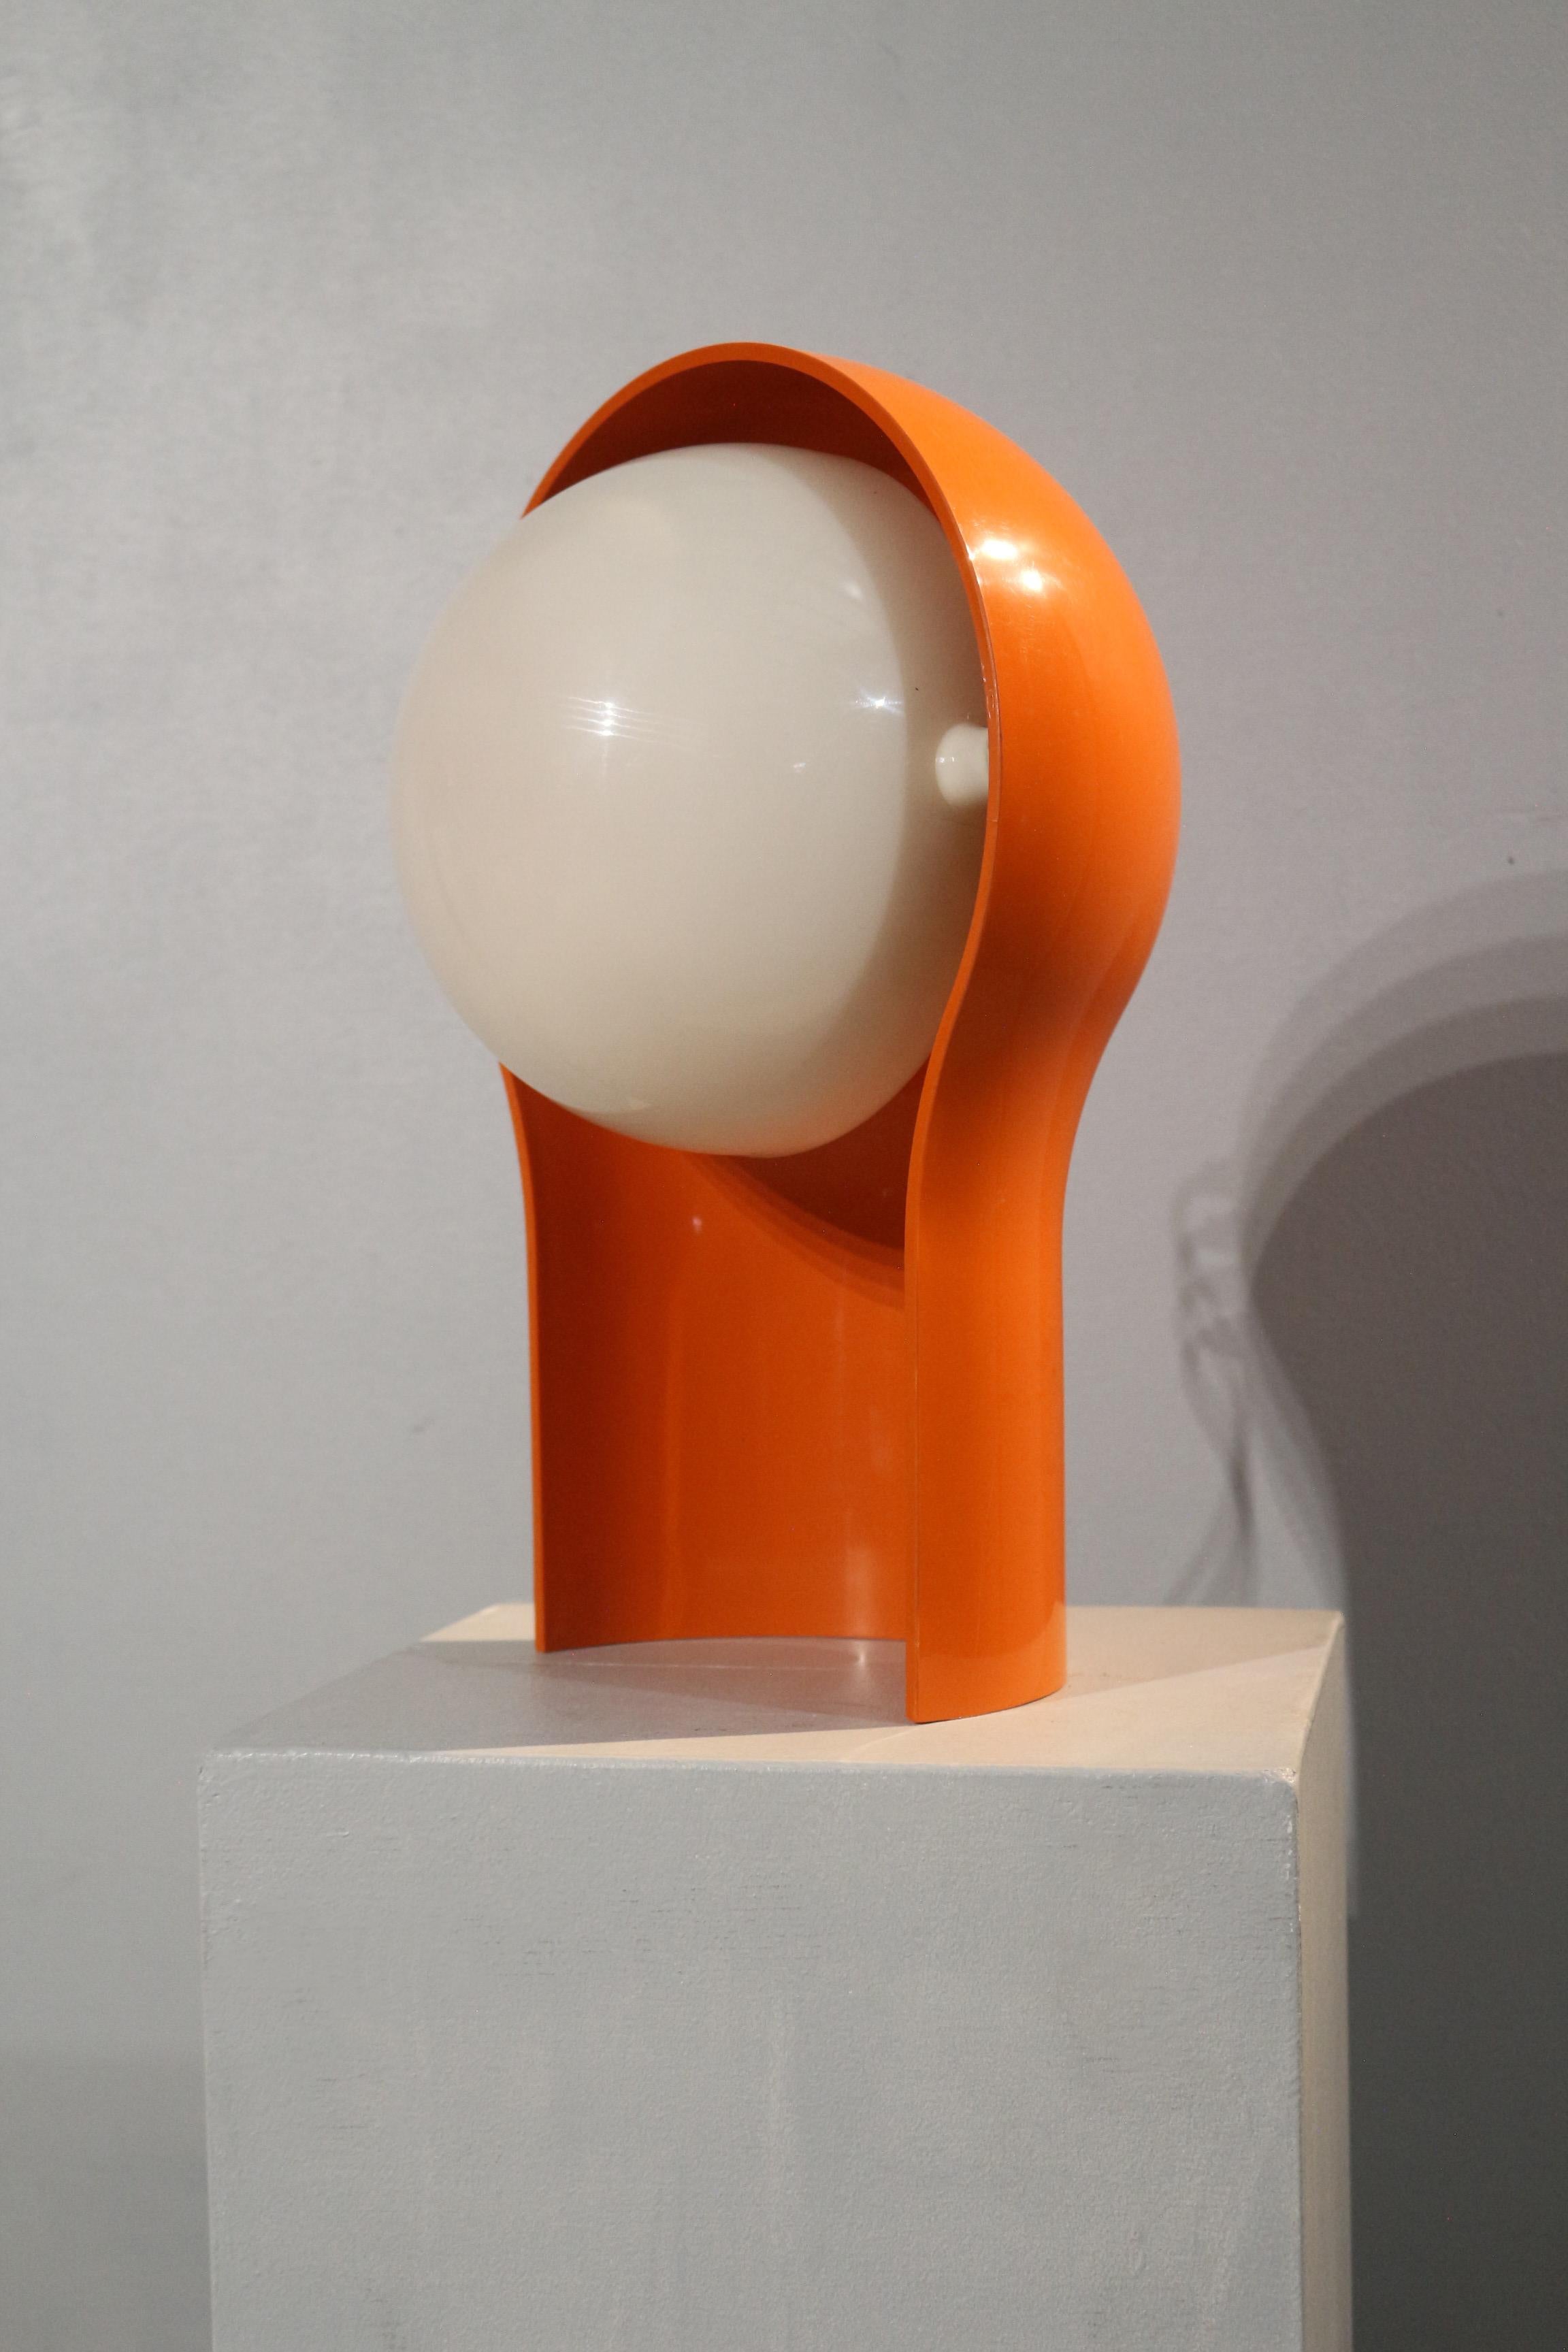 Original-Tischlampe Telegono von Vico Magistretti für Artemide 1968. 
En bon état d'origine. 
Dieser italienische Klassiker hat ein cremefarbenes Gehäuse und ein orangefarbenes Handy, das in allen Positionen einsetzbar ist. 
Alle Teile sind im